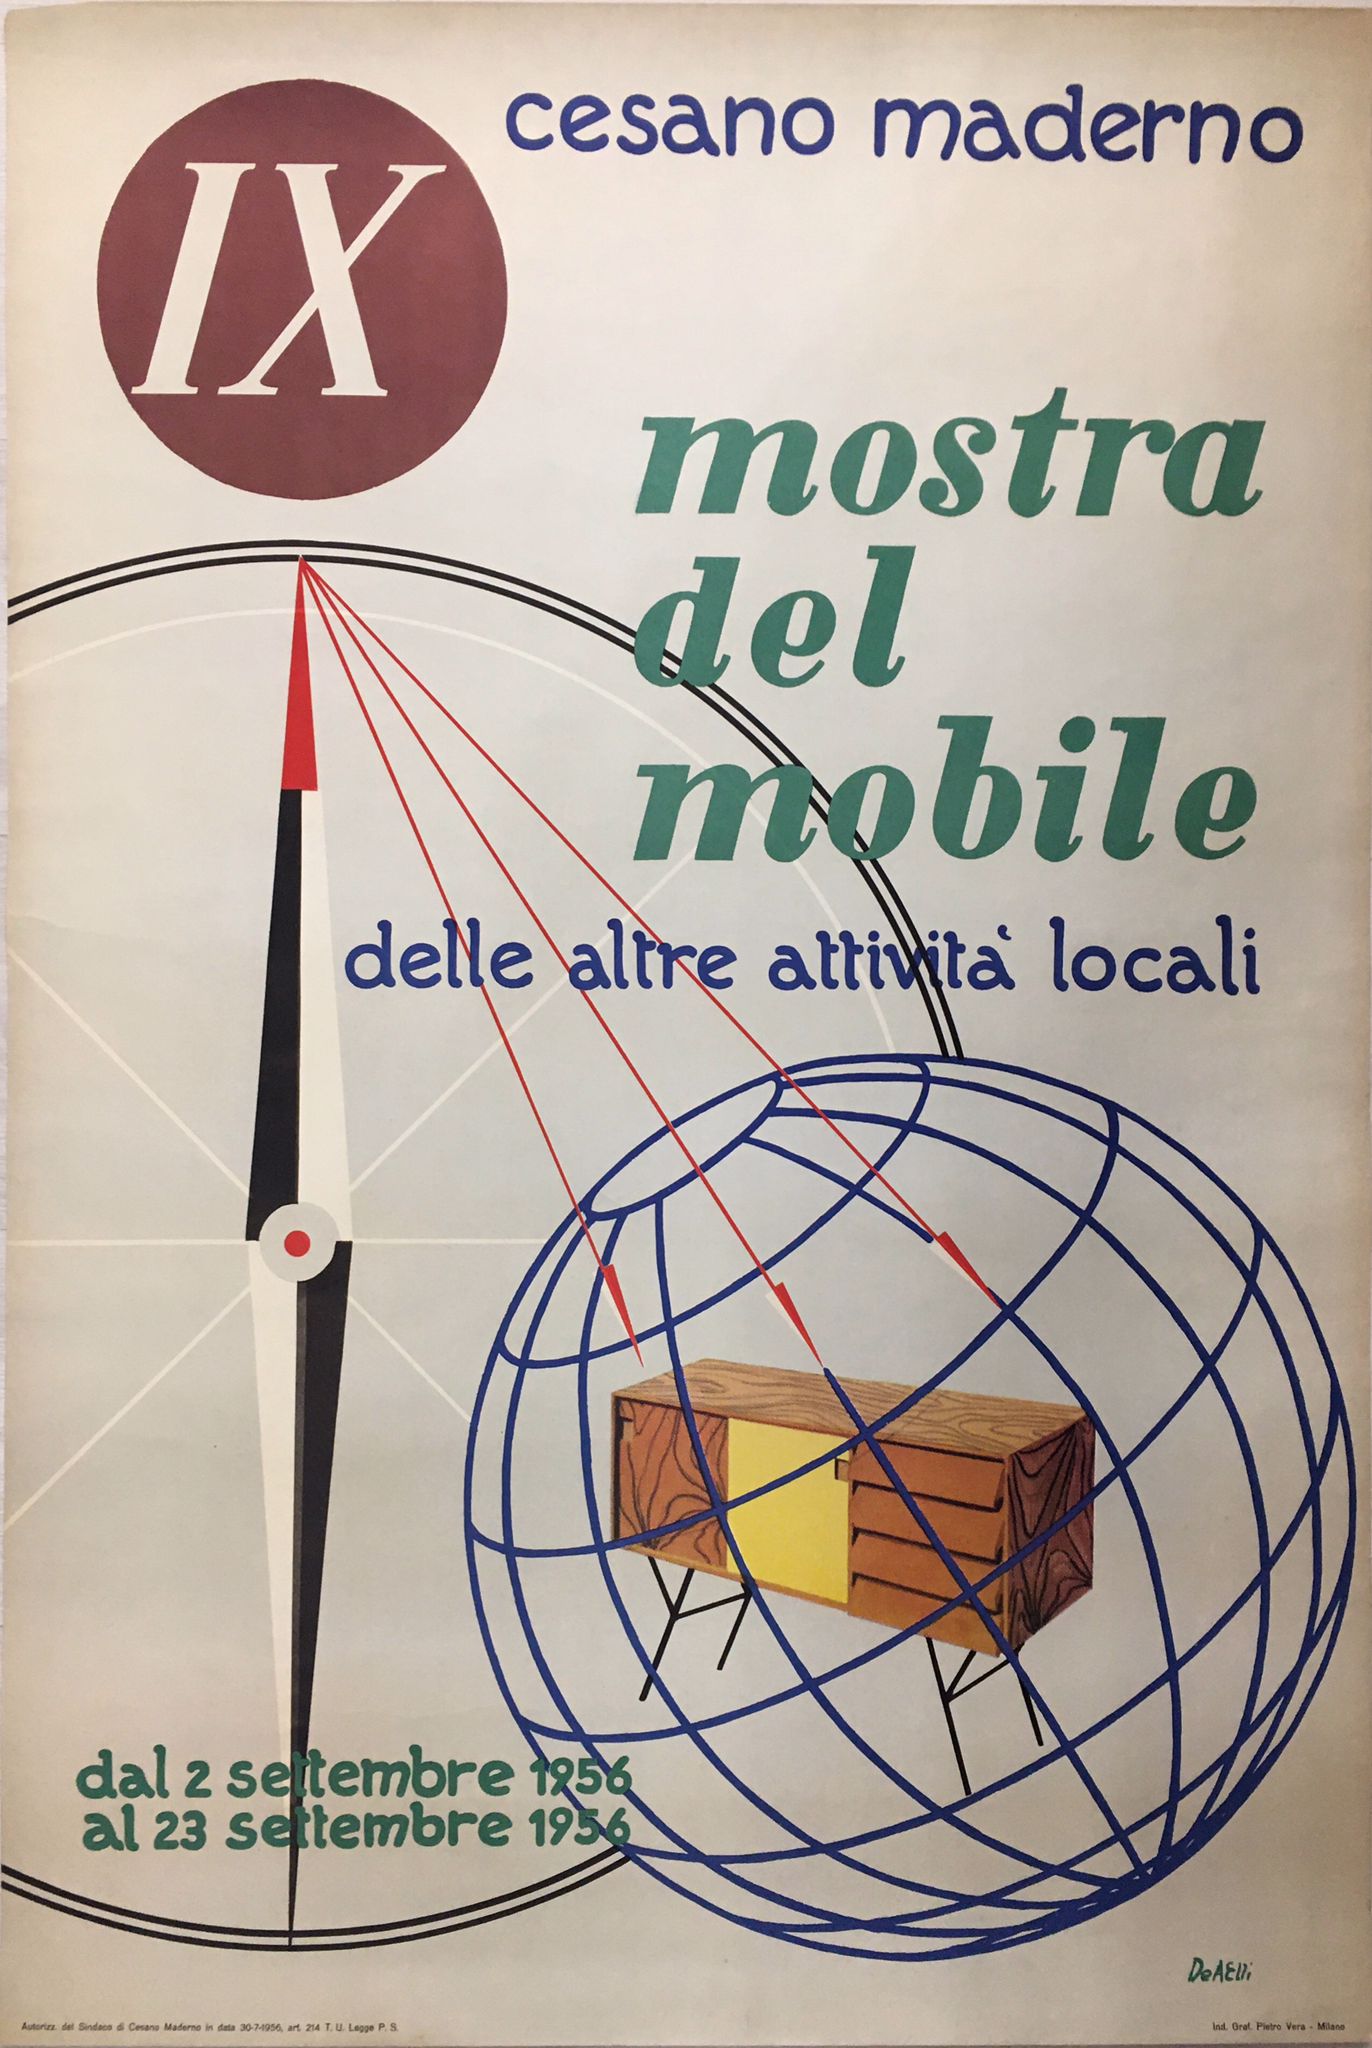 Manifesto d'epoca Mostra del mobile Cesano Maderno (Milano) Tortona4Arte